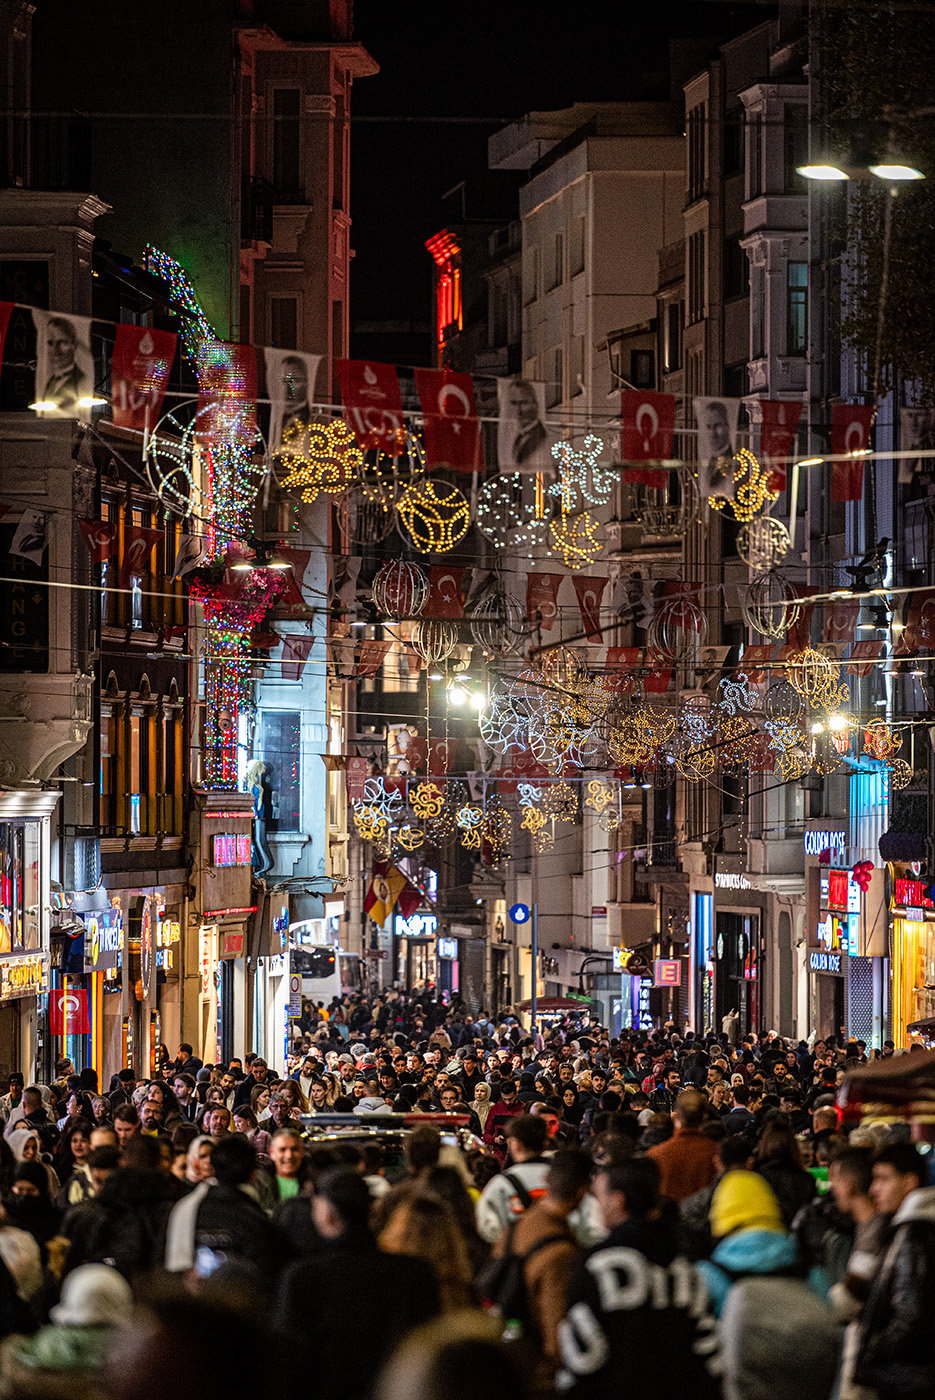 A busy nightlife street in Taksim